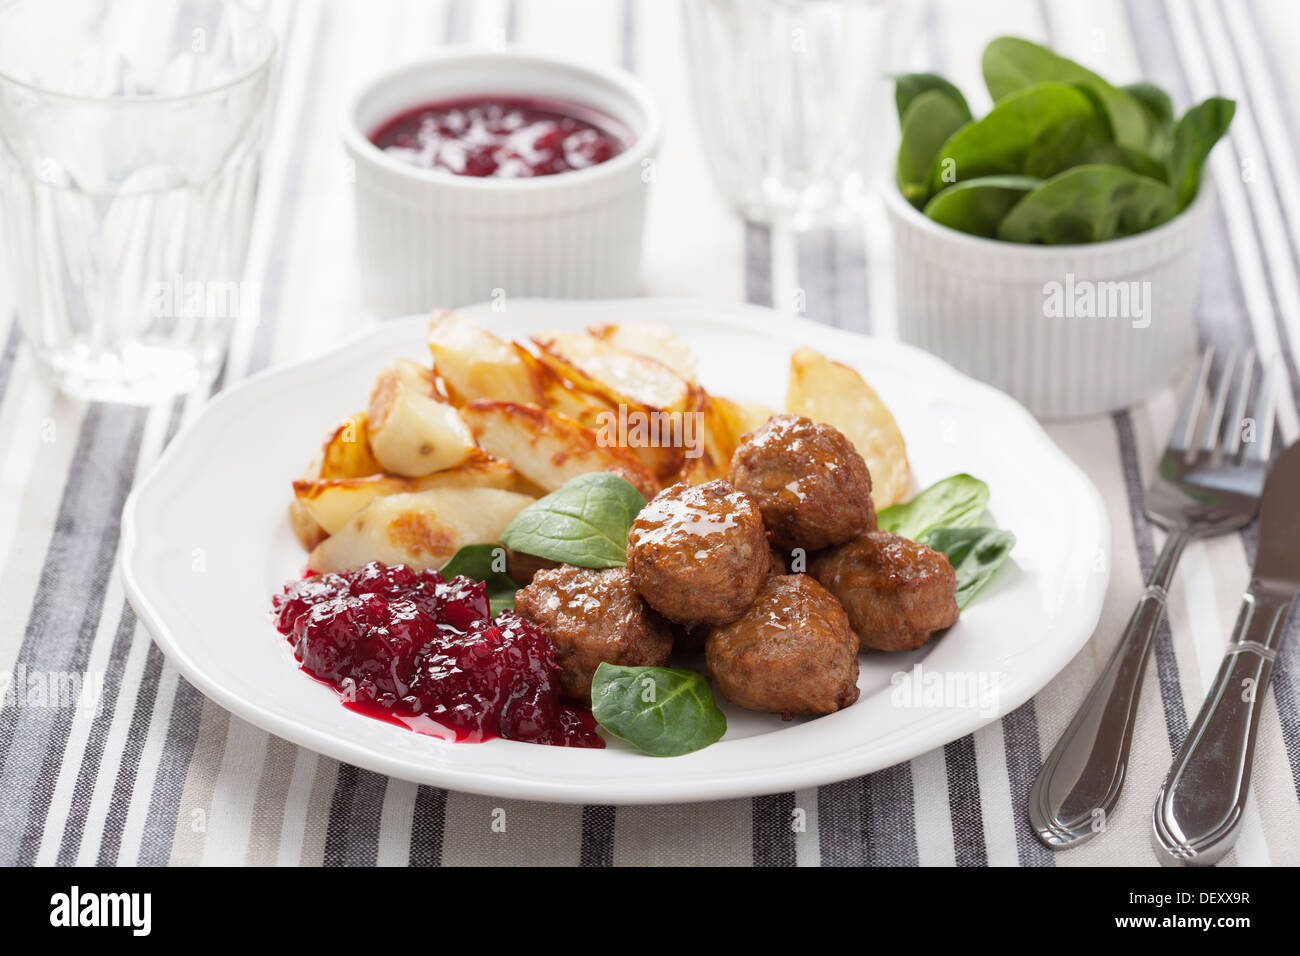 Swedish meatballs avec pommes de terre et la confiture lingon Banque D'Images